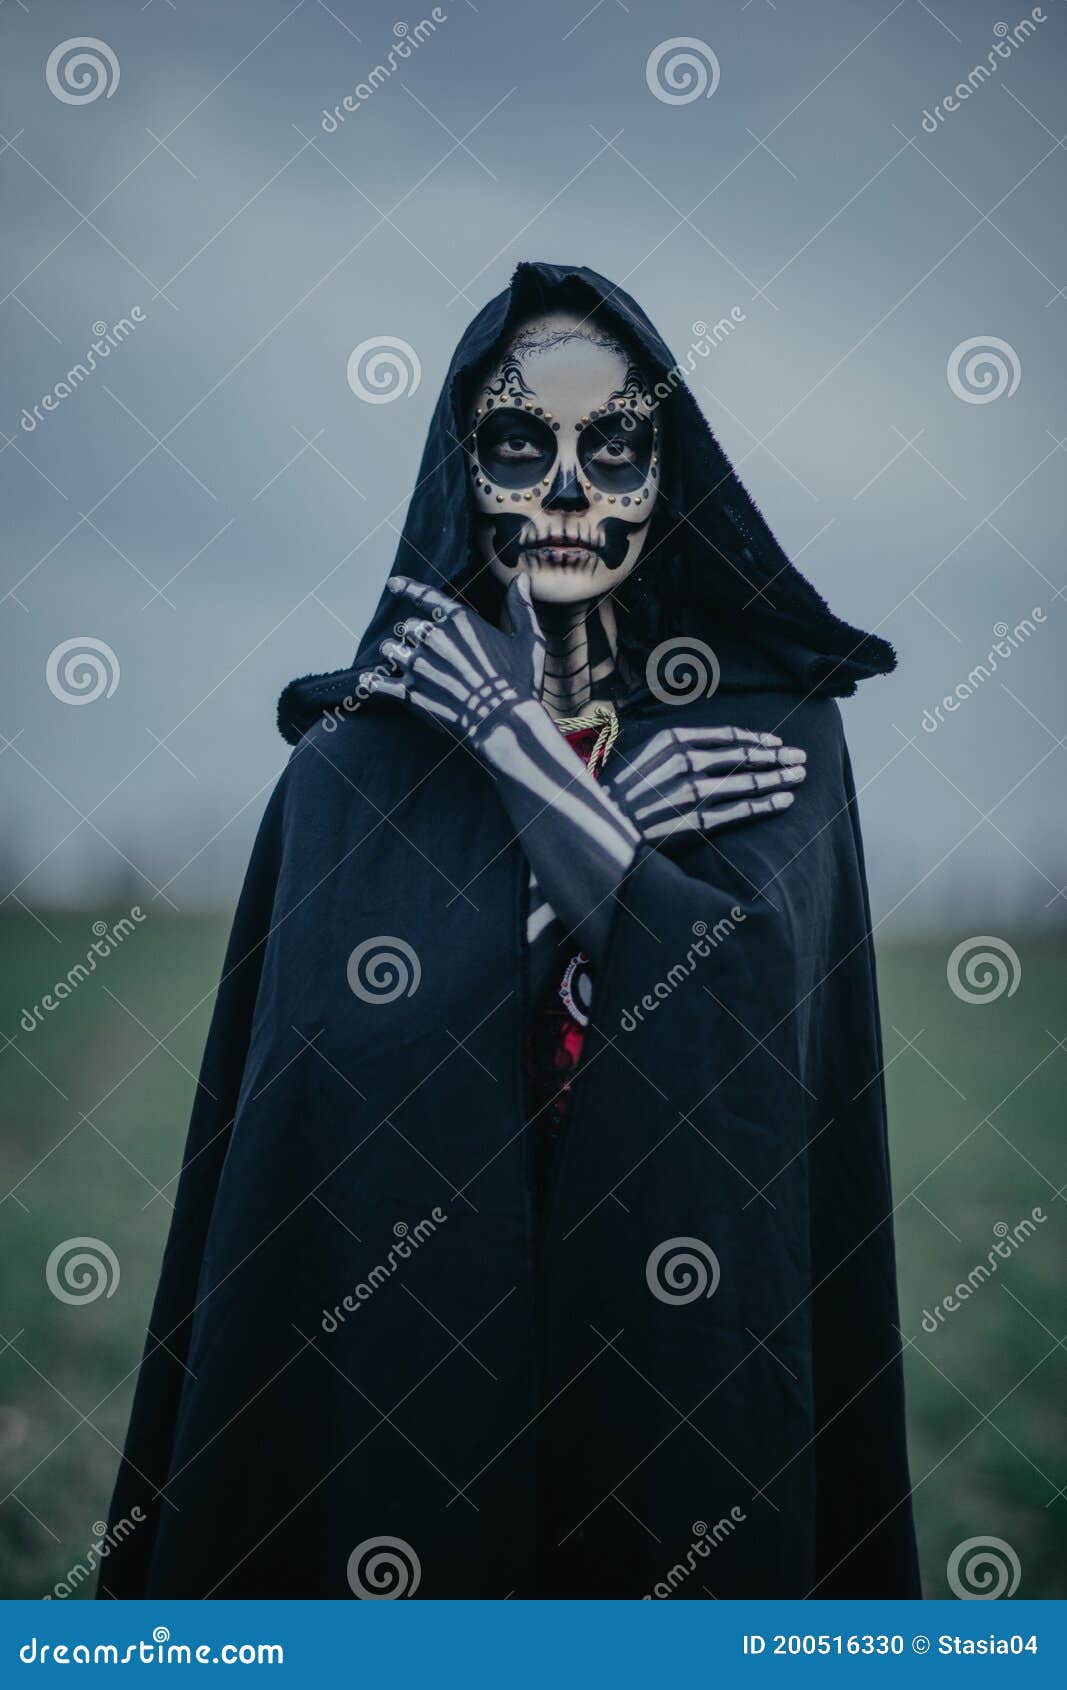 Insistir Montañas climáticas Regeneración Retrato De Mujer Con Disfraz De Muerte De Halloween Con Esqueleto Pintado  En Su Cuerpo Y Maquillaje De Cráneo De Azúcar Foto de archivo - Imagen de  capote, adulto: 200516330